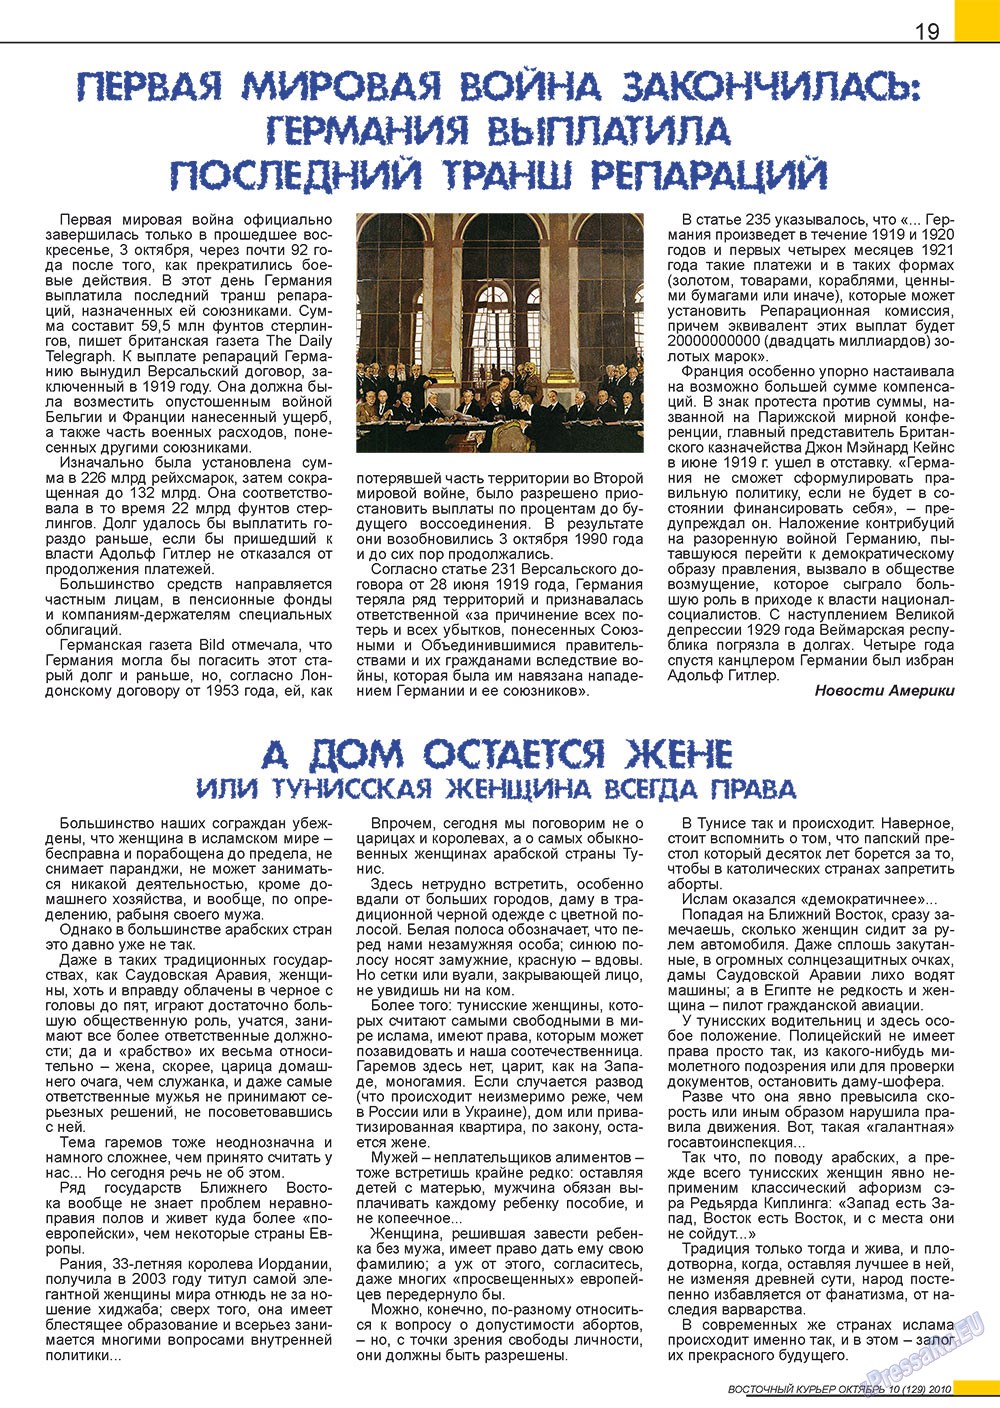 Восточный курьер, журнал. 2010 №10 стр.19